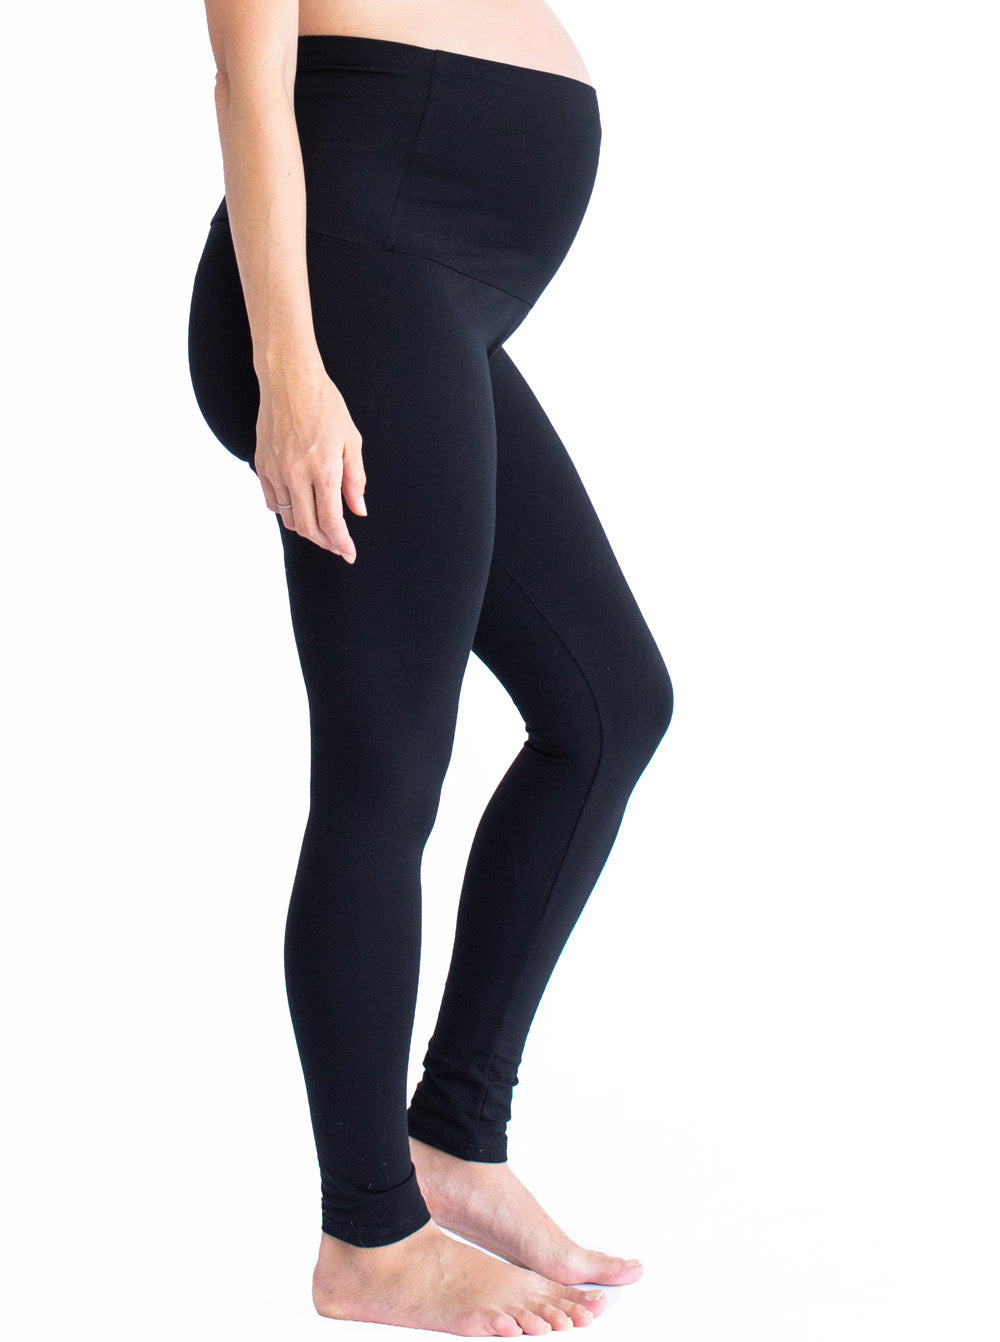 Basic Maternity Legging in Black or Navy – Angel Maternity USA